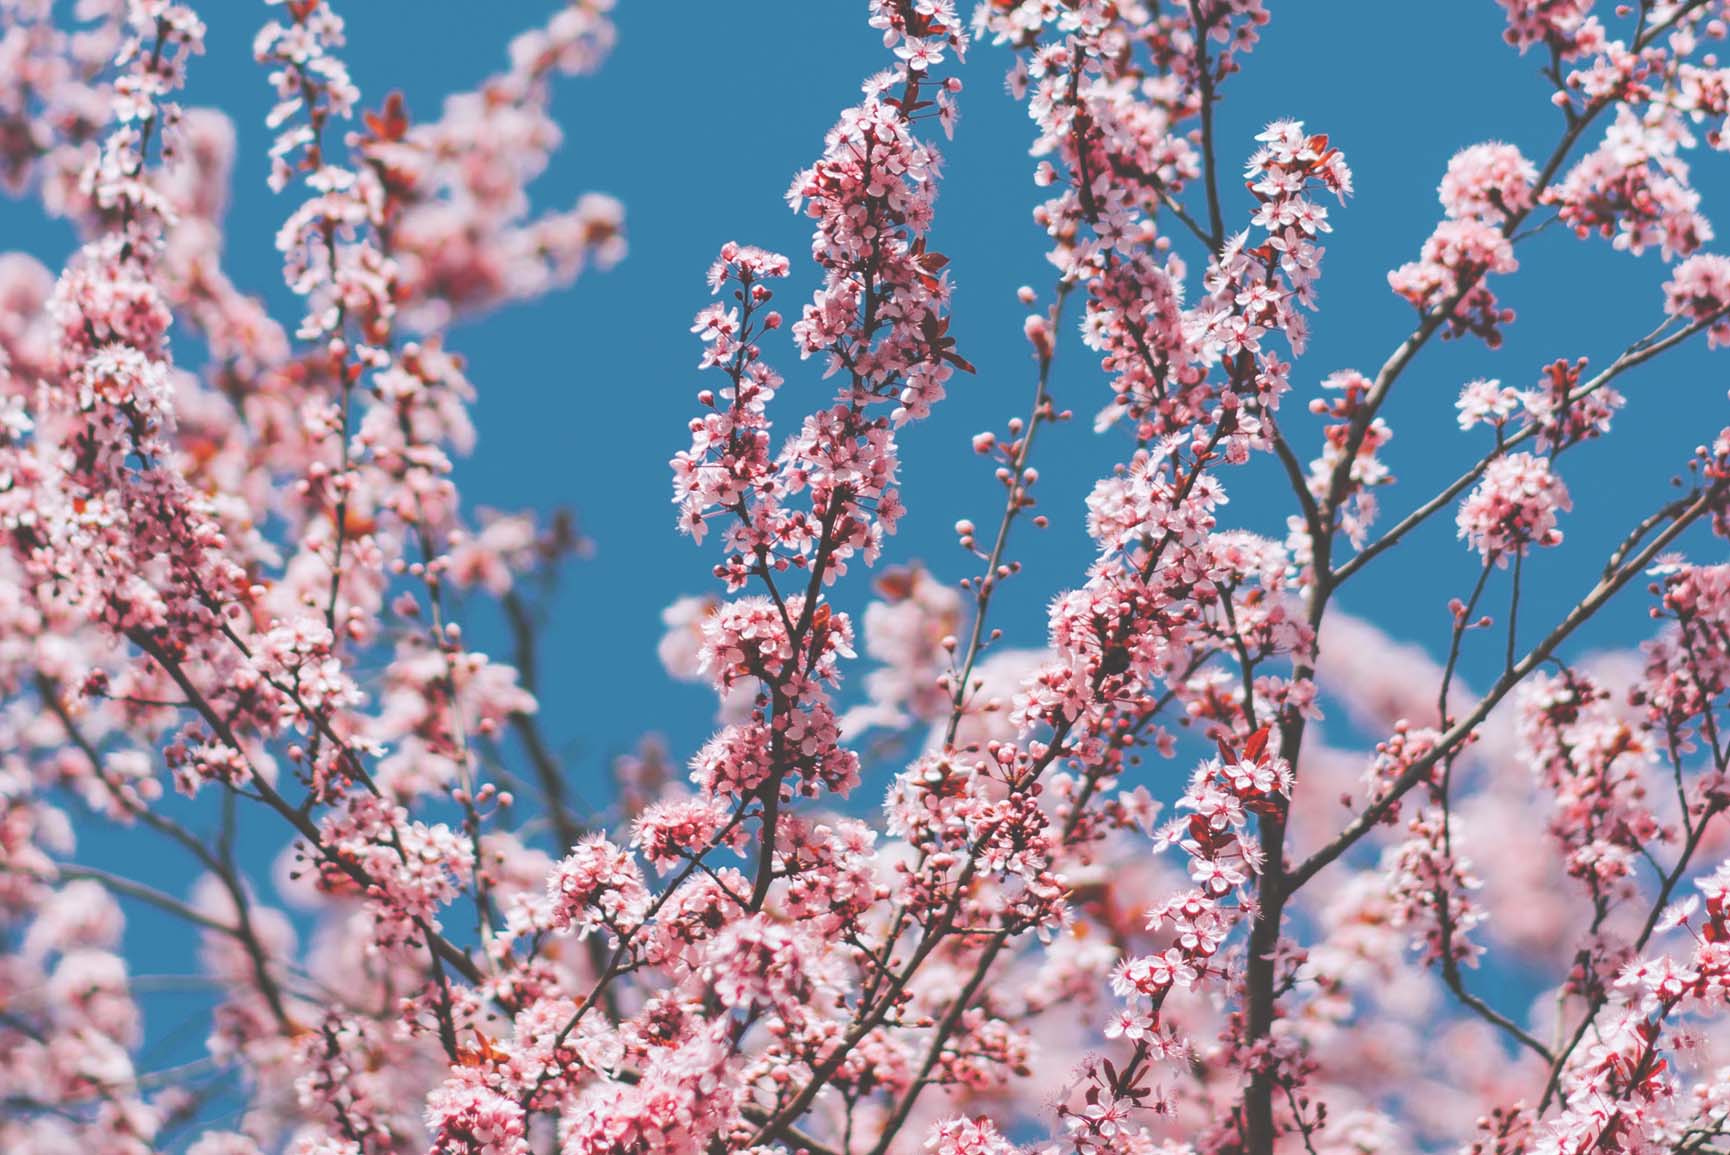 والپیپر samsung با طرح شکوفه صورتی درختان در فصل بهار